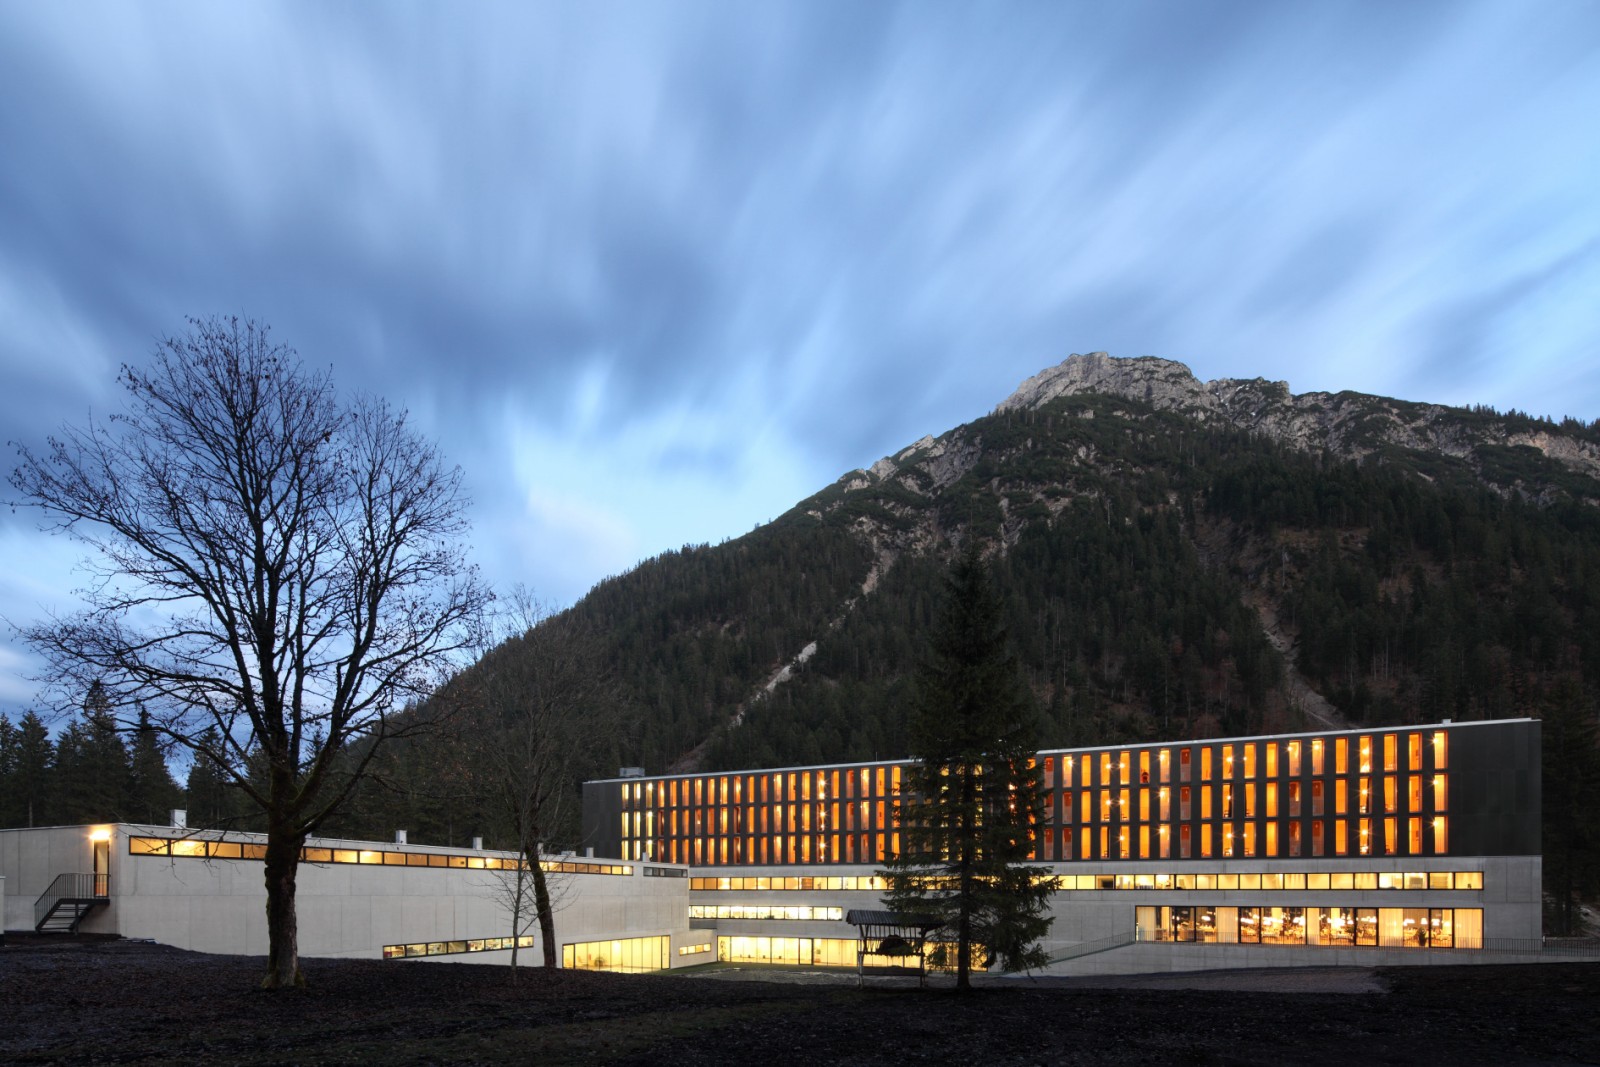 Bmw alpenhotel ammerwald preise #6